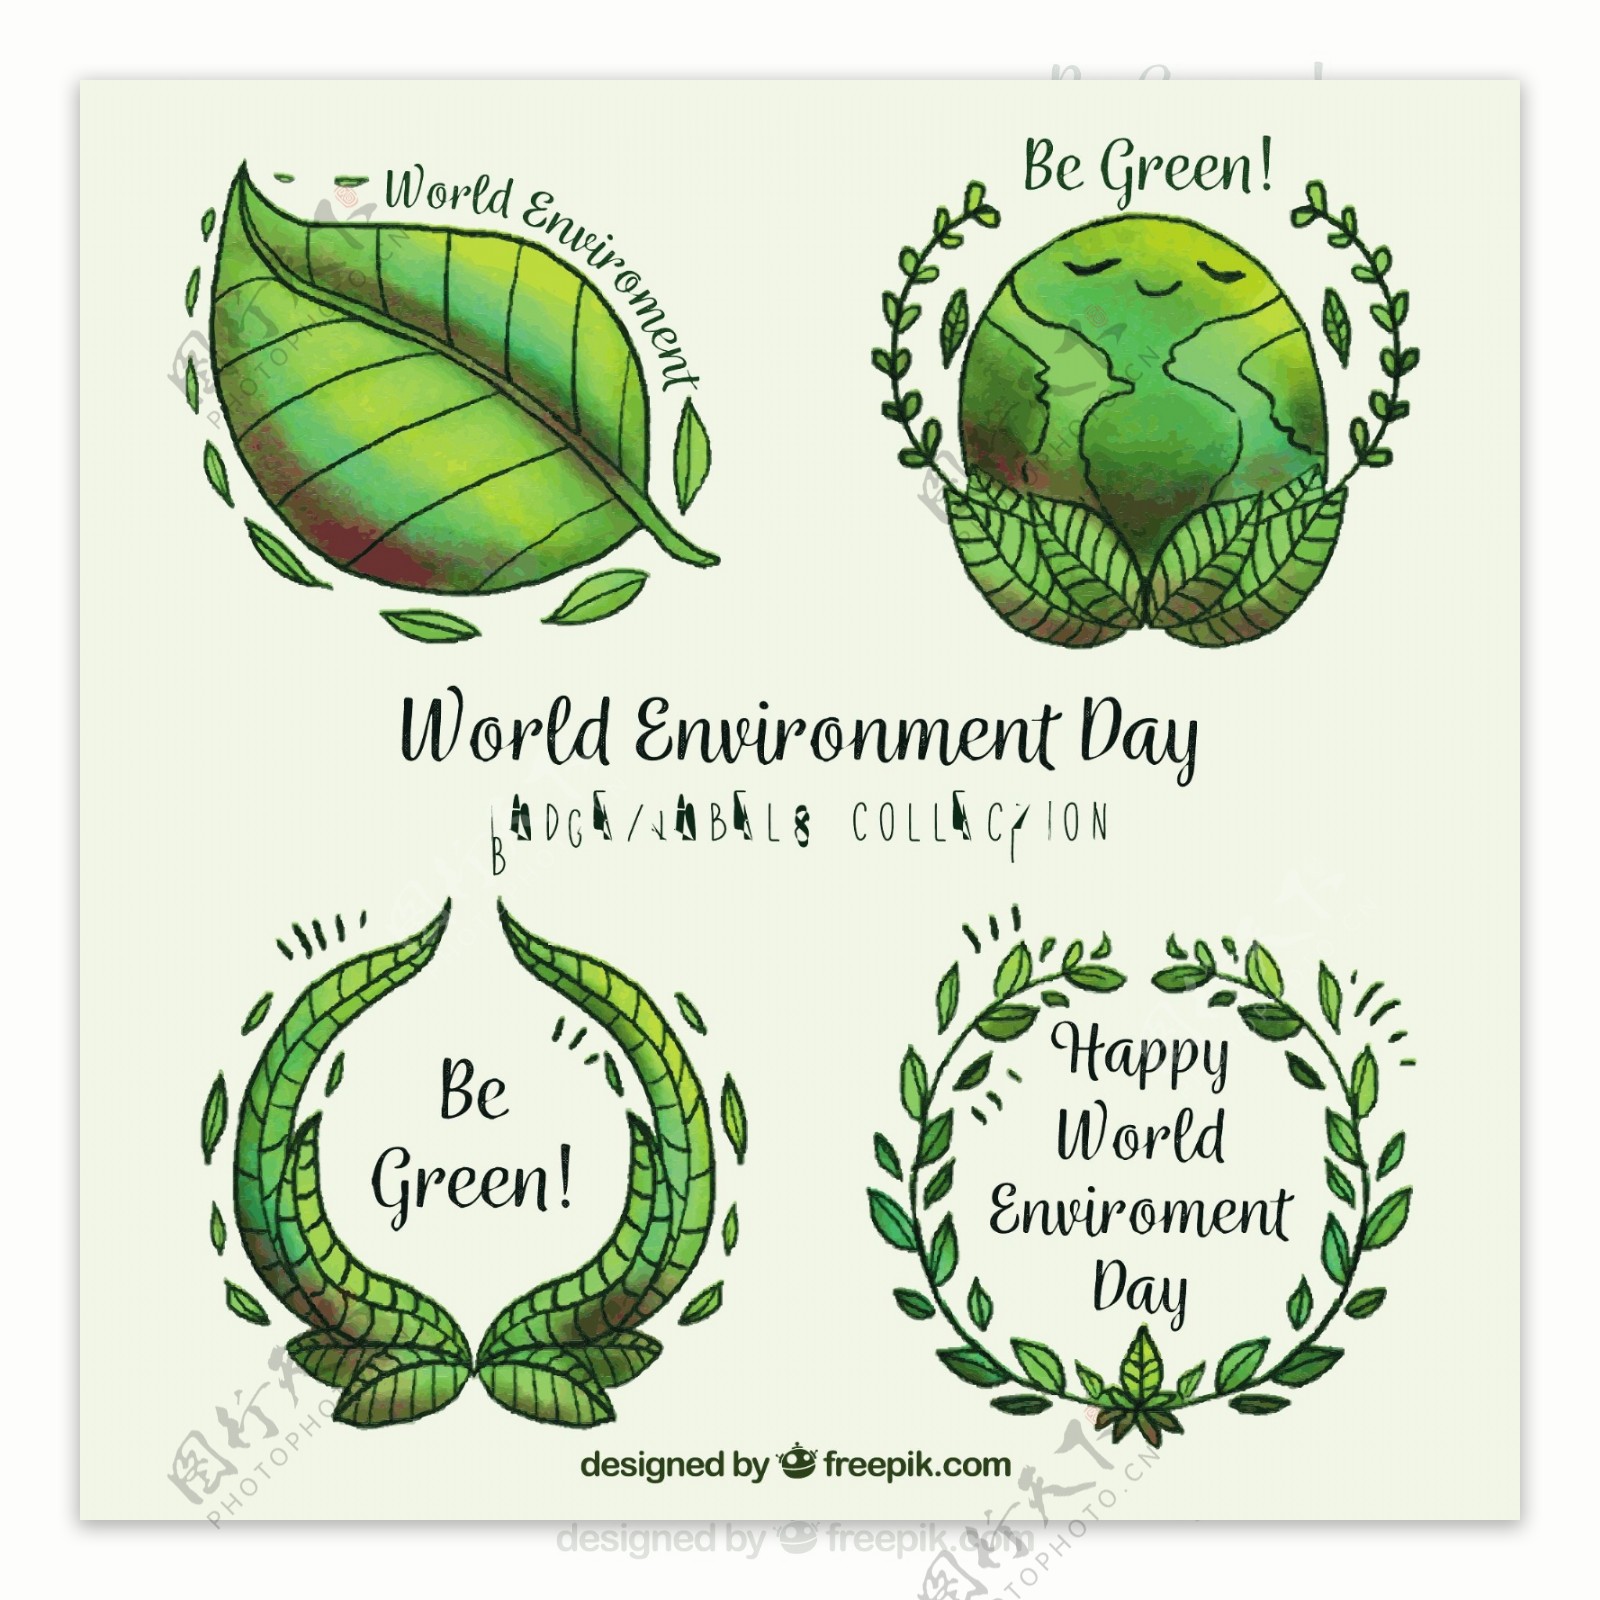 四个世界环境日绿色标签图标矢量素材